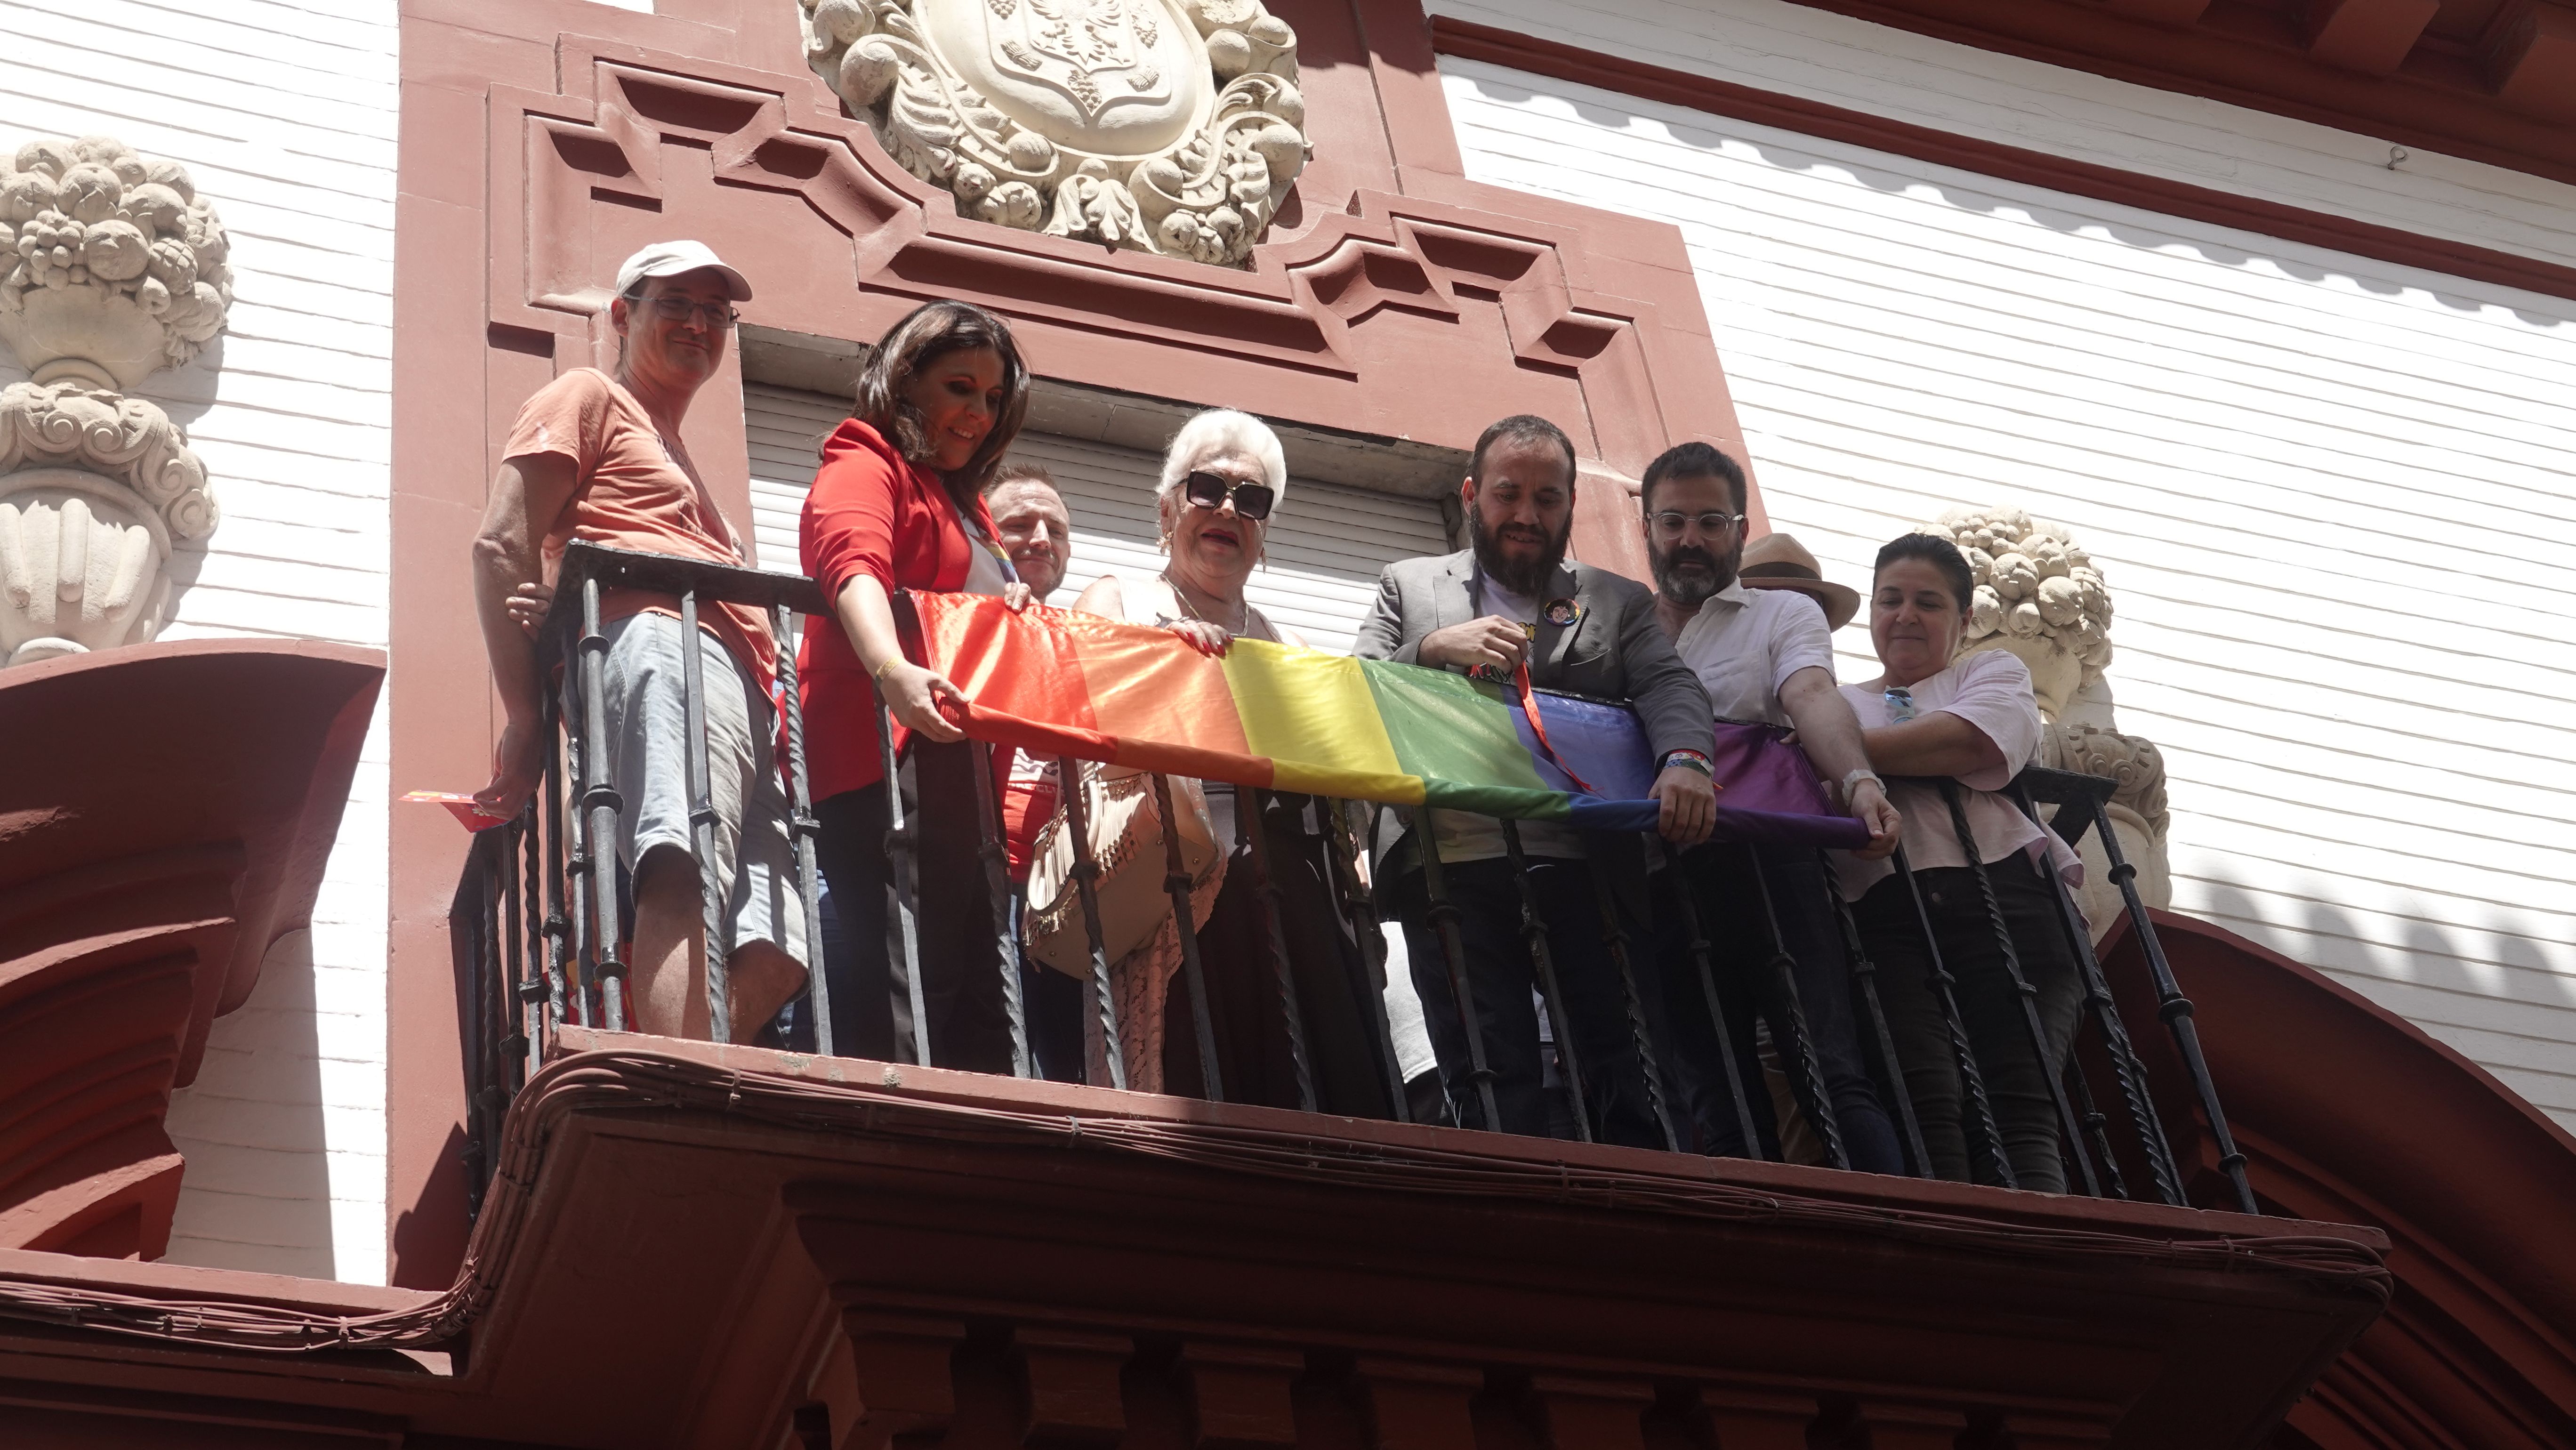 Manolo Rosado en el centro de la imagen izando la bandera LGTBI.